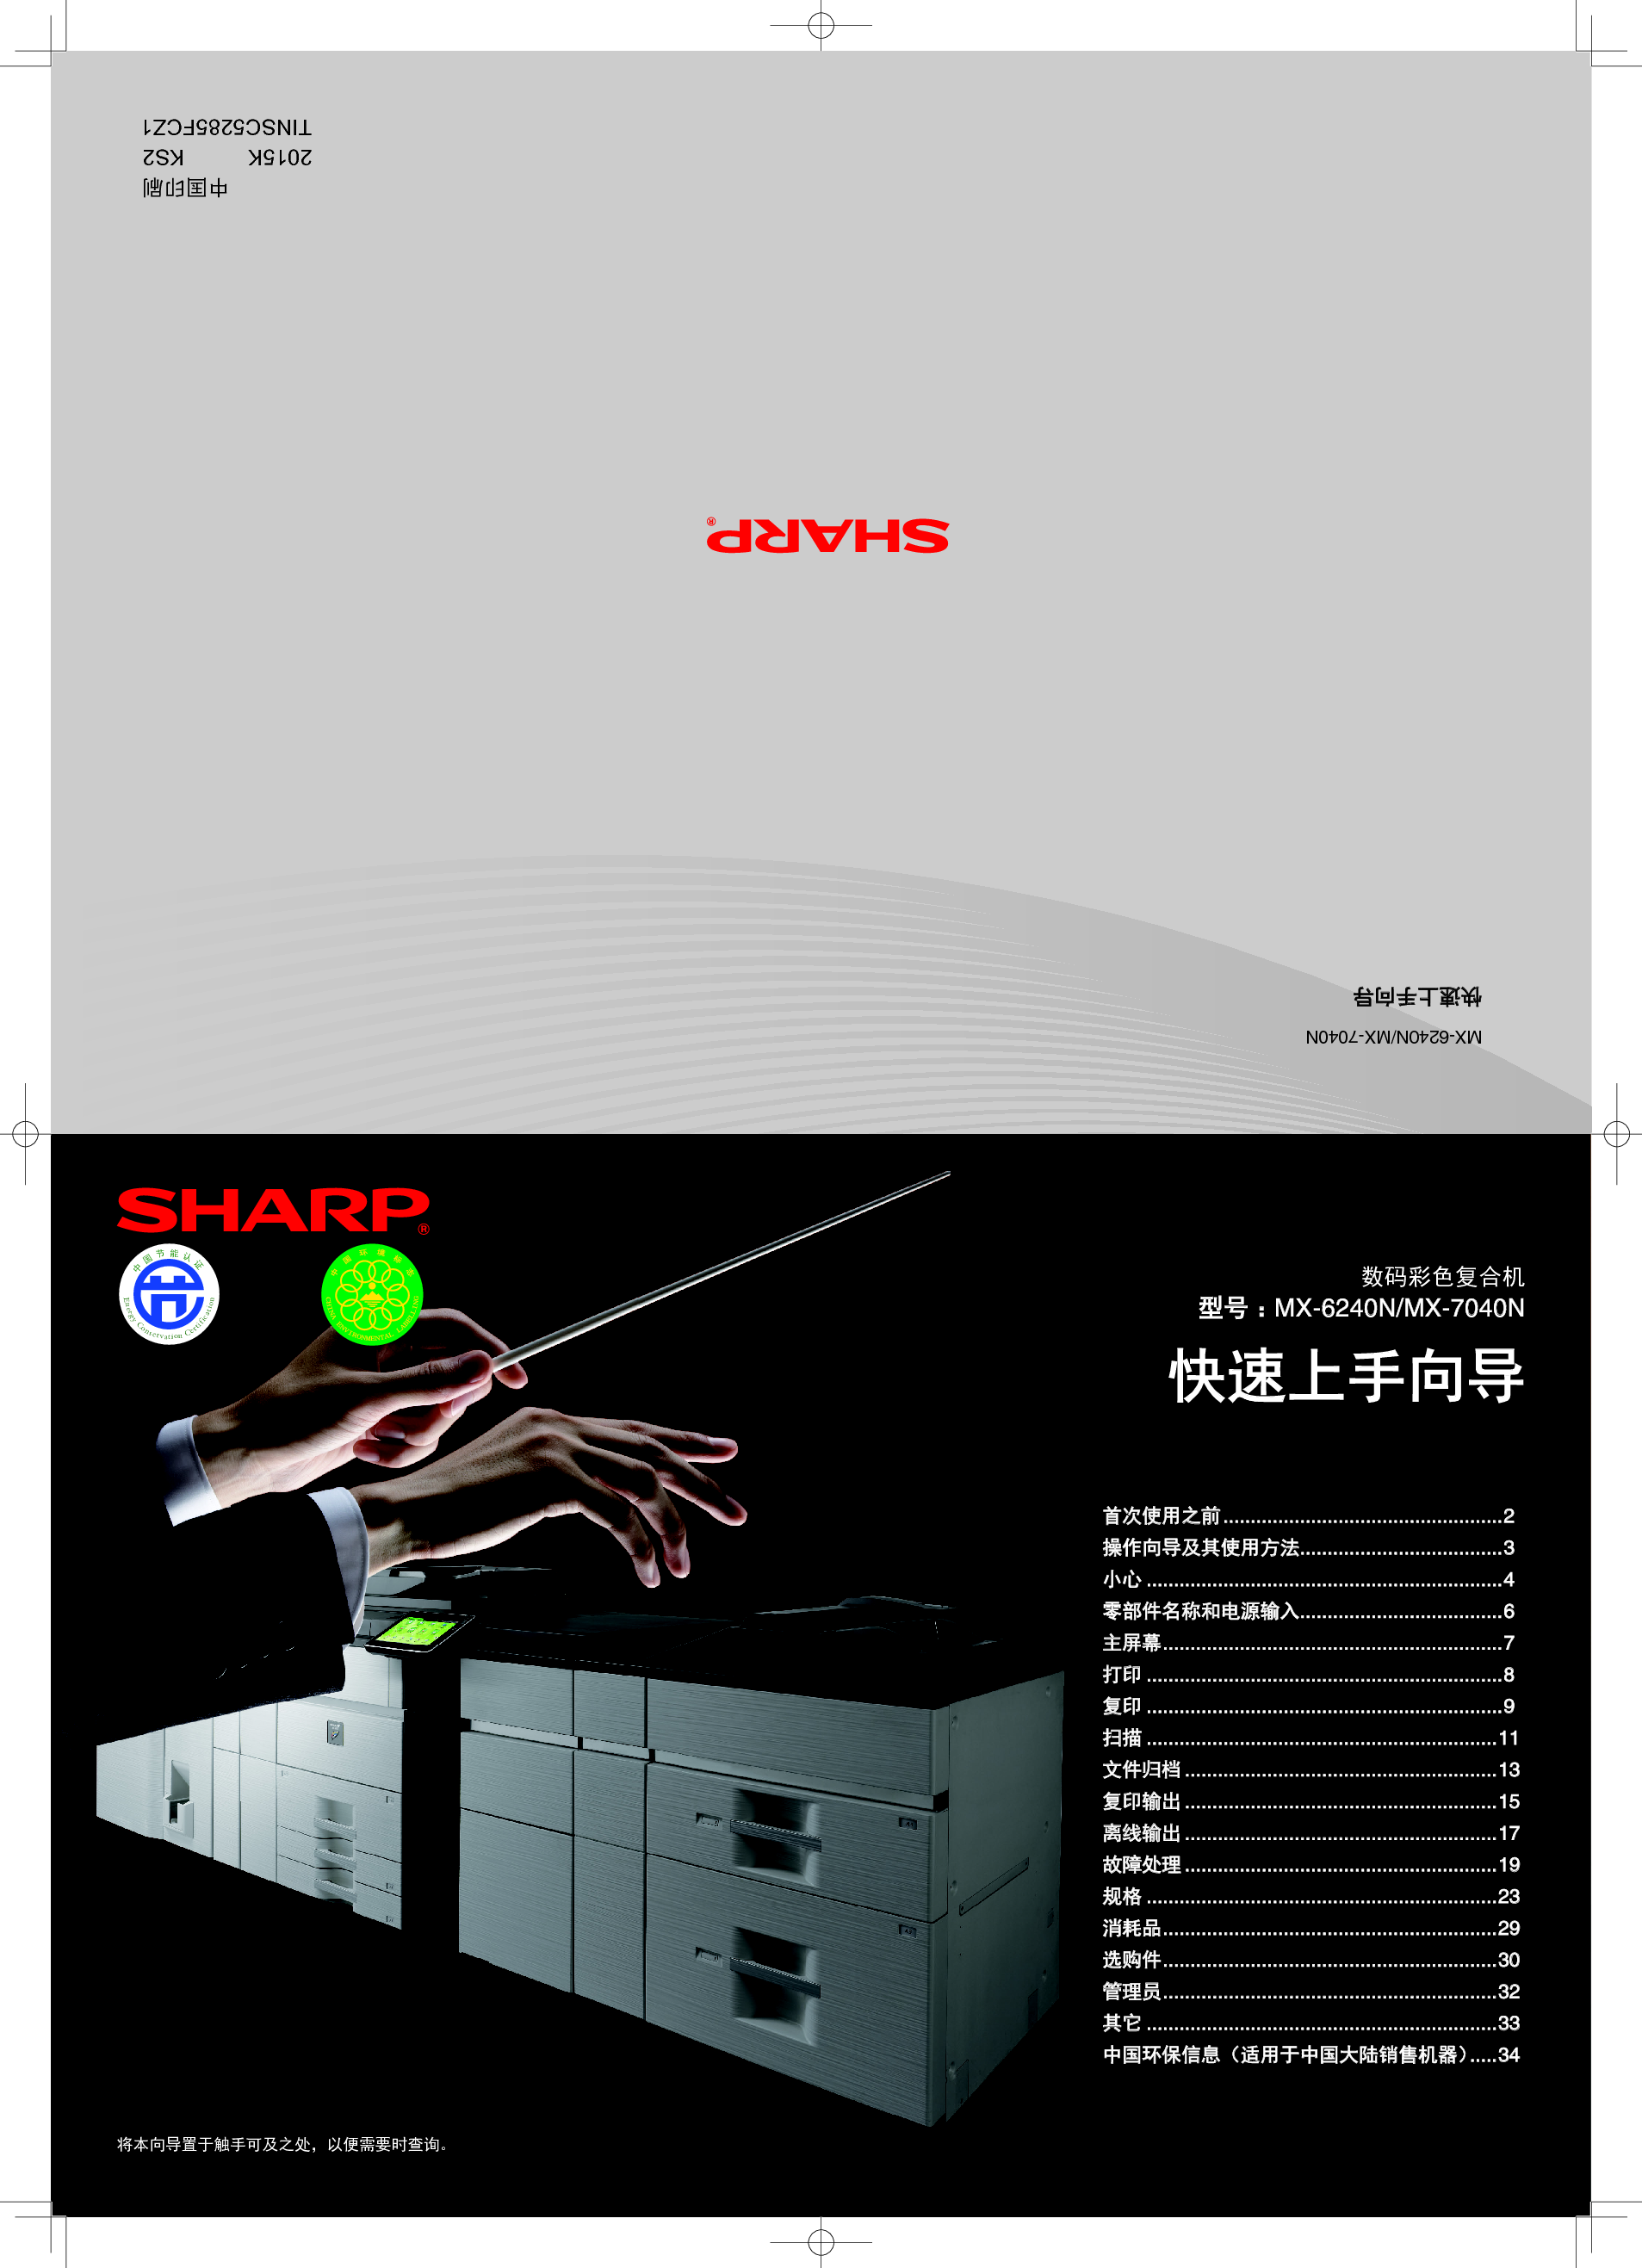 夏普 Sharp MX-6240N 入门 操作手册 封面